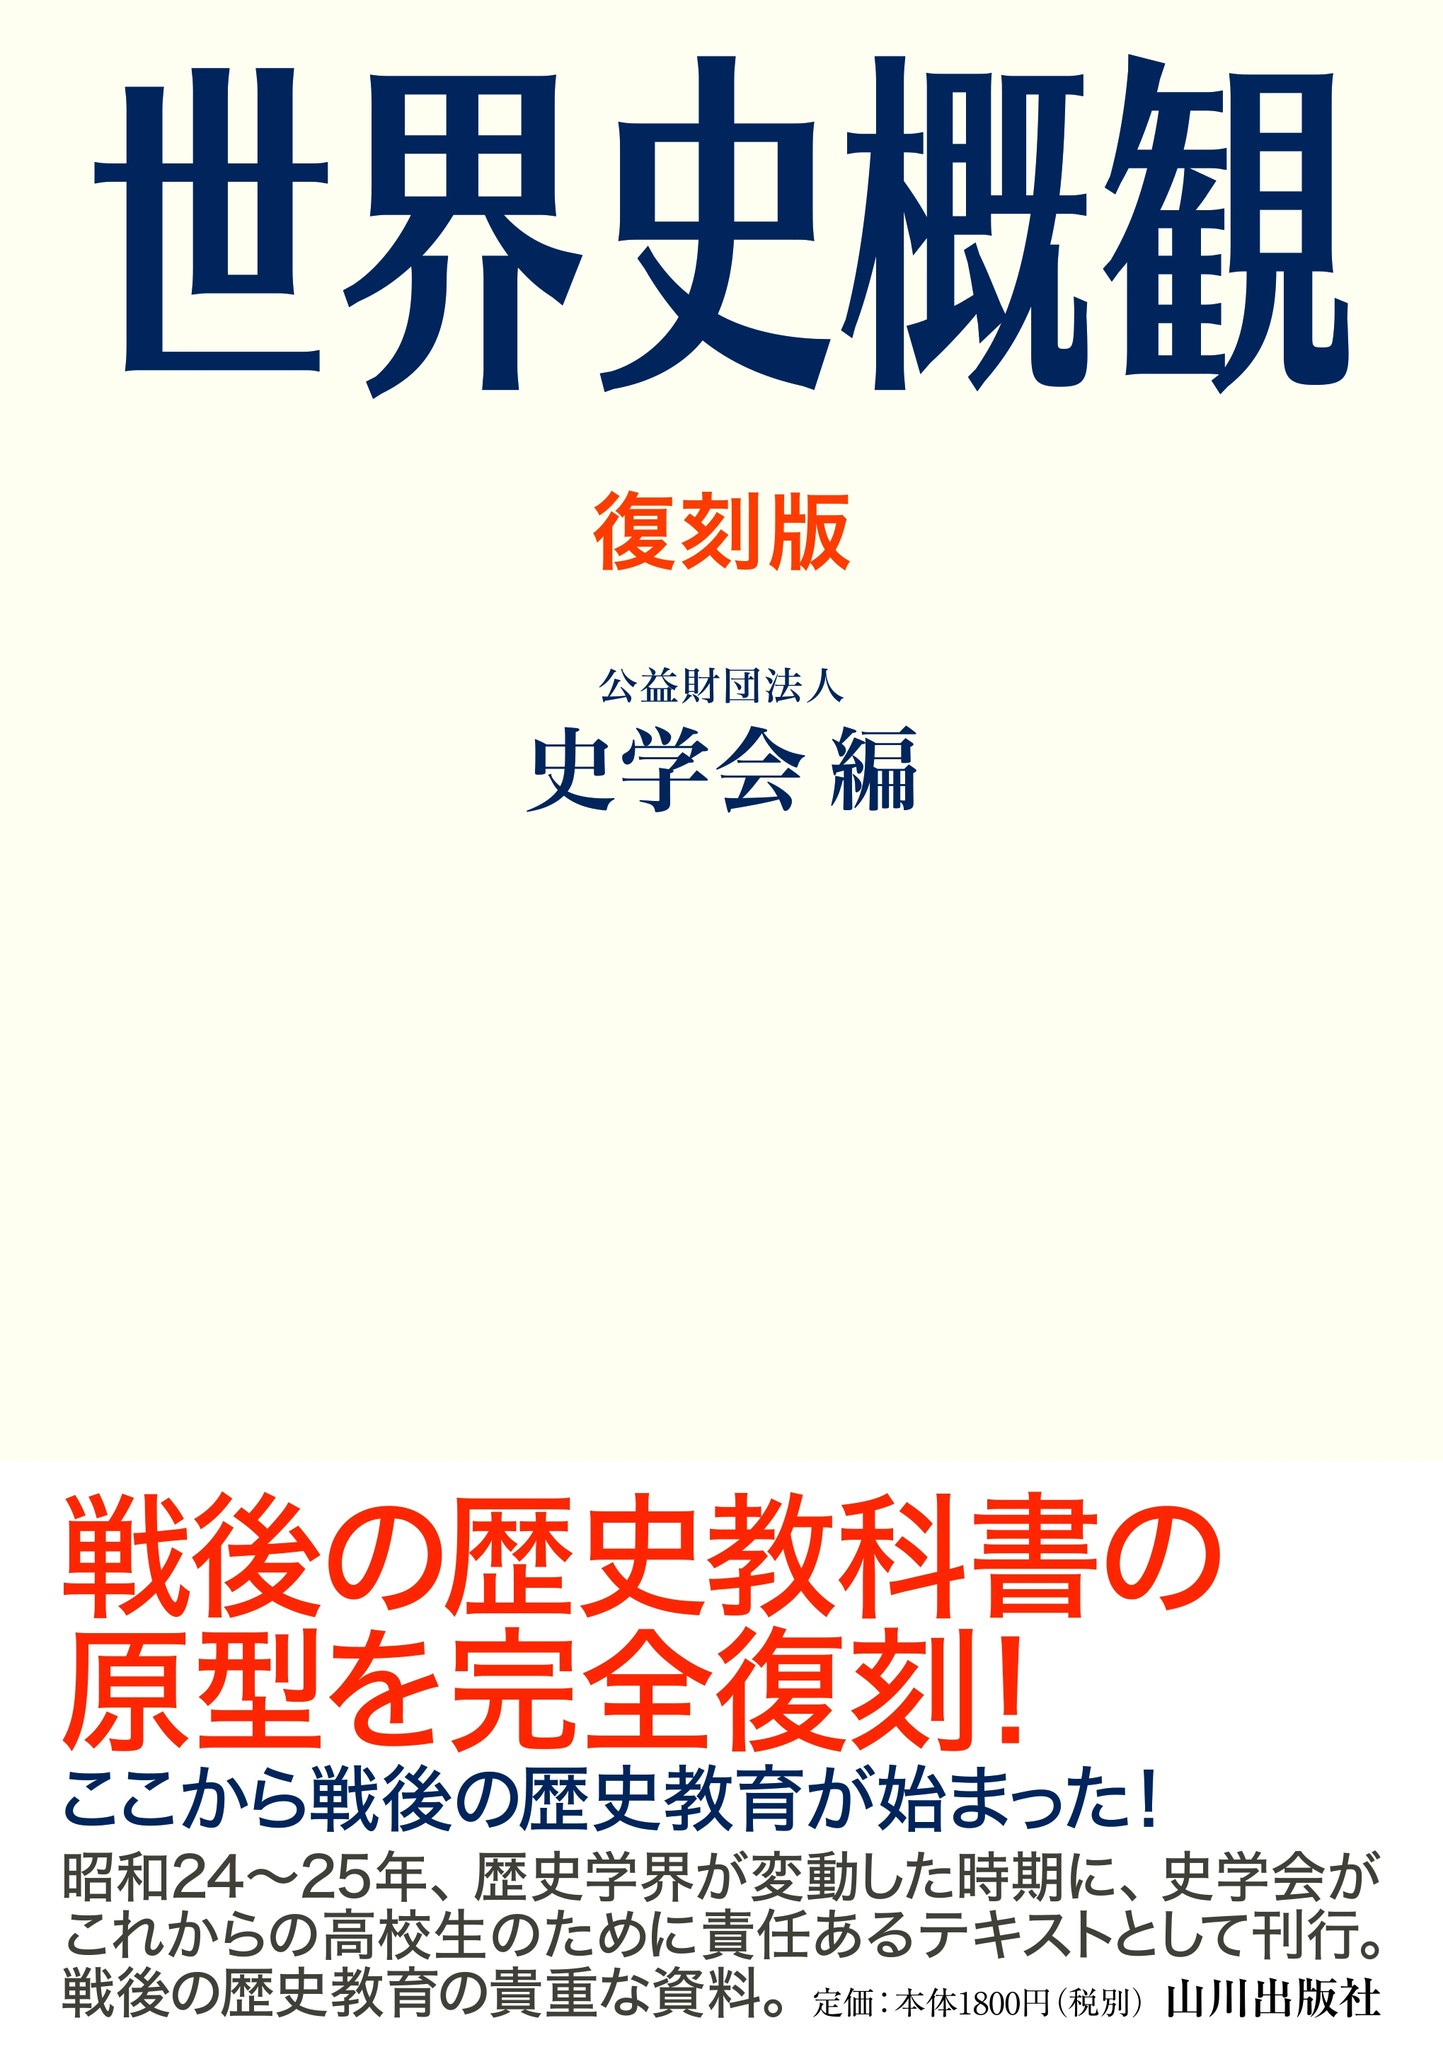 日本で初めて「世界史」を出版してから今年で70周年！「復刻版 世界史